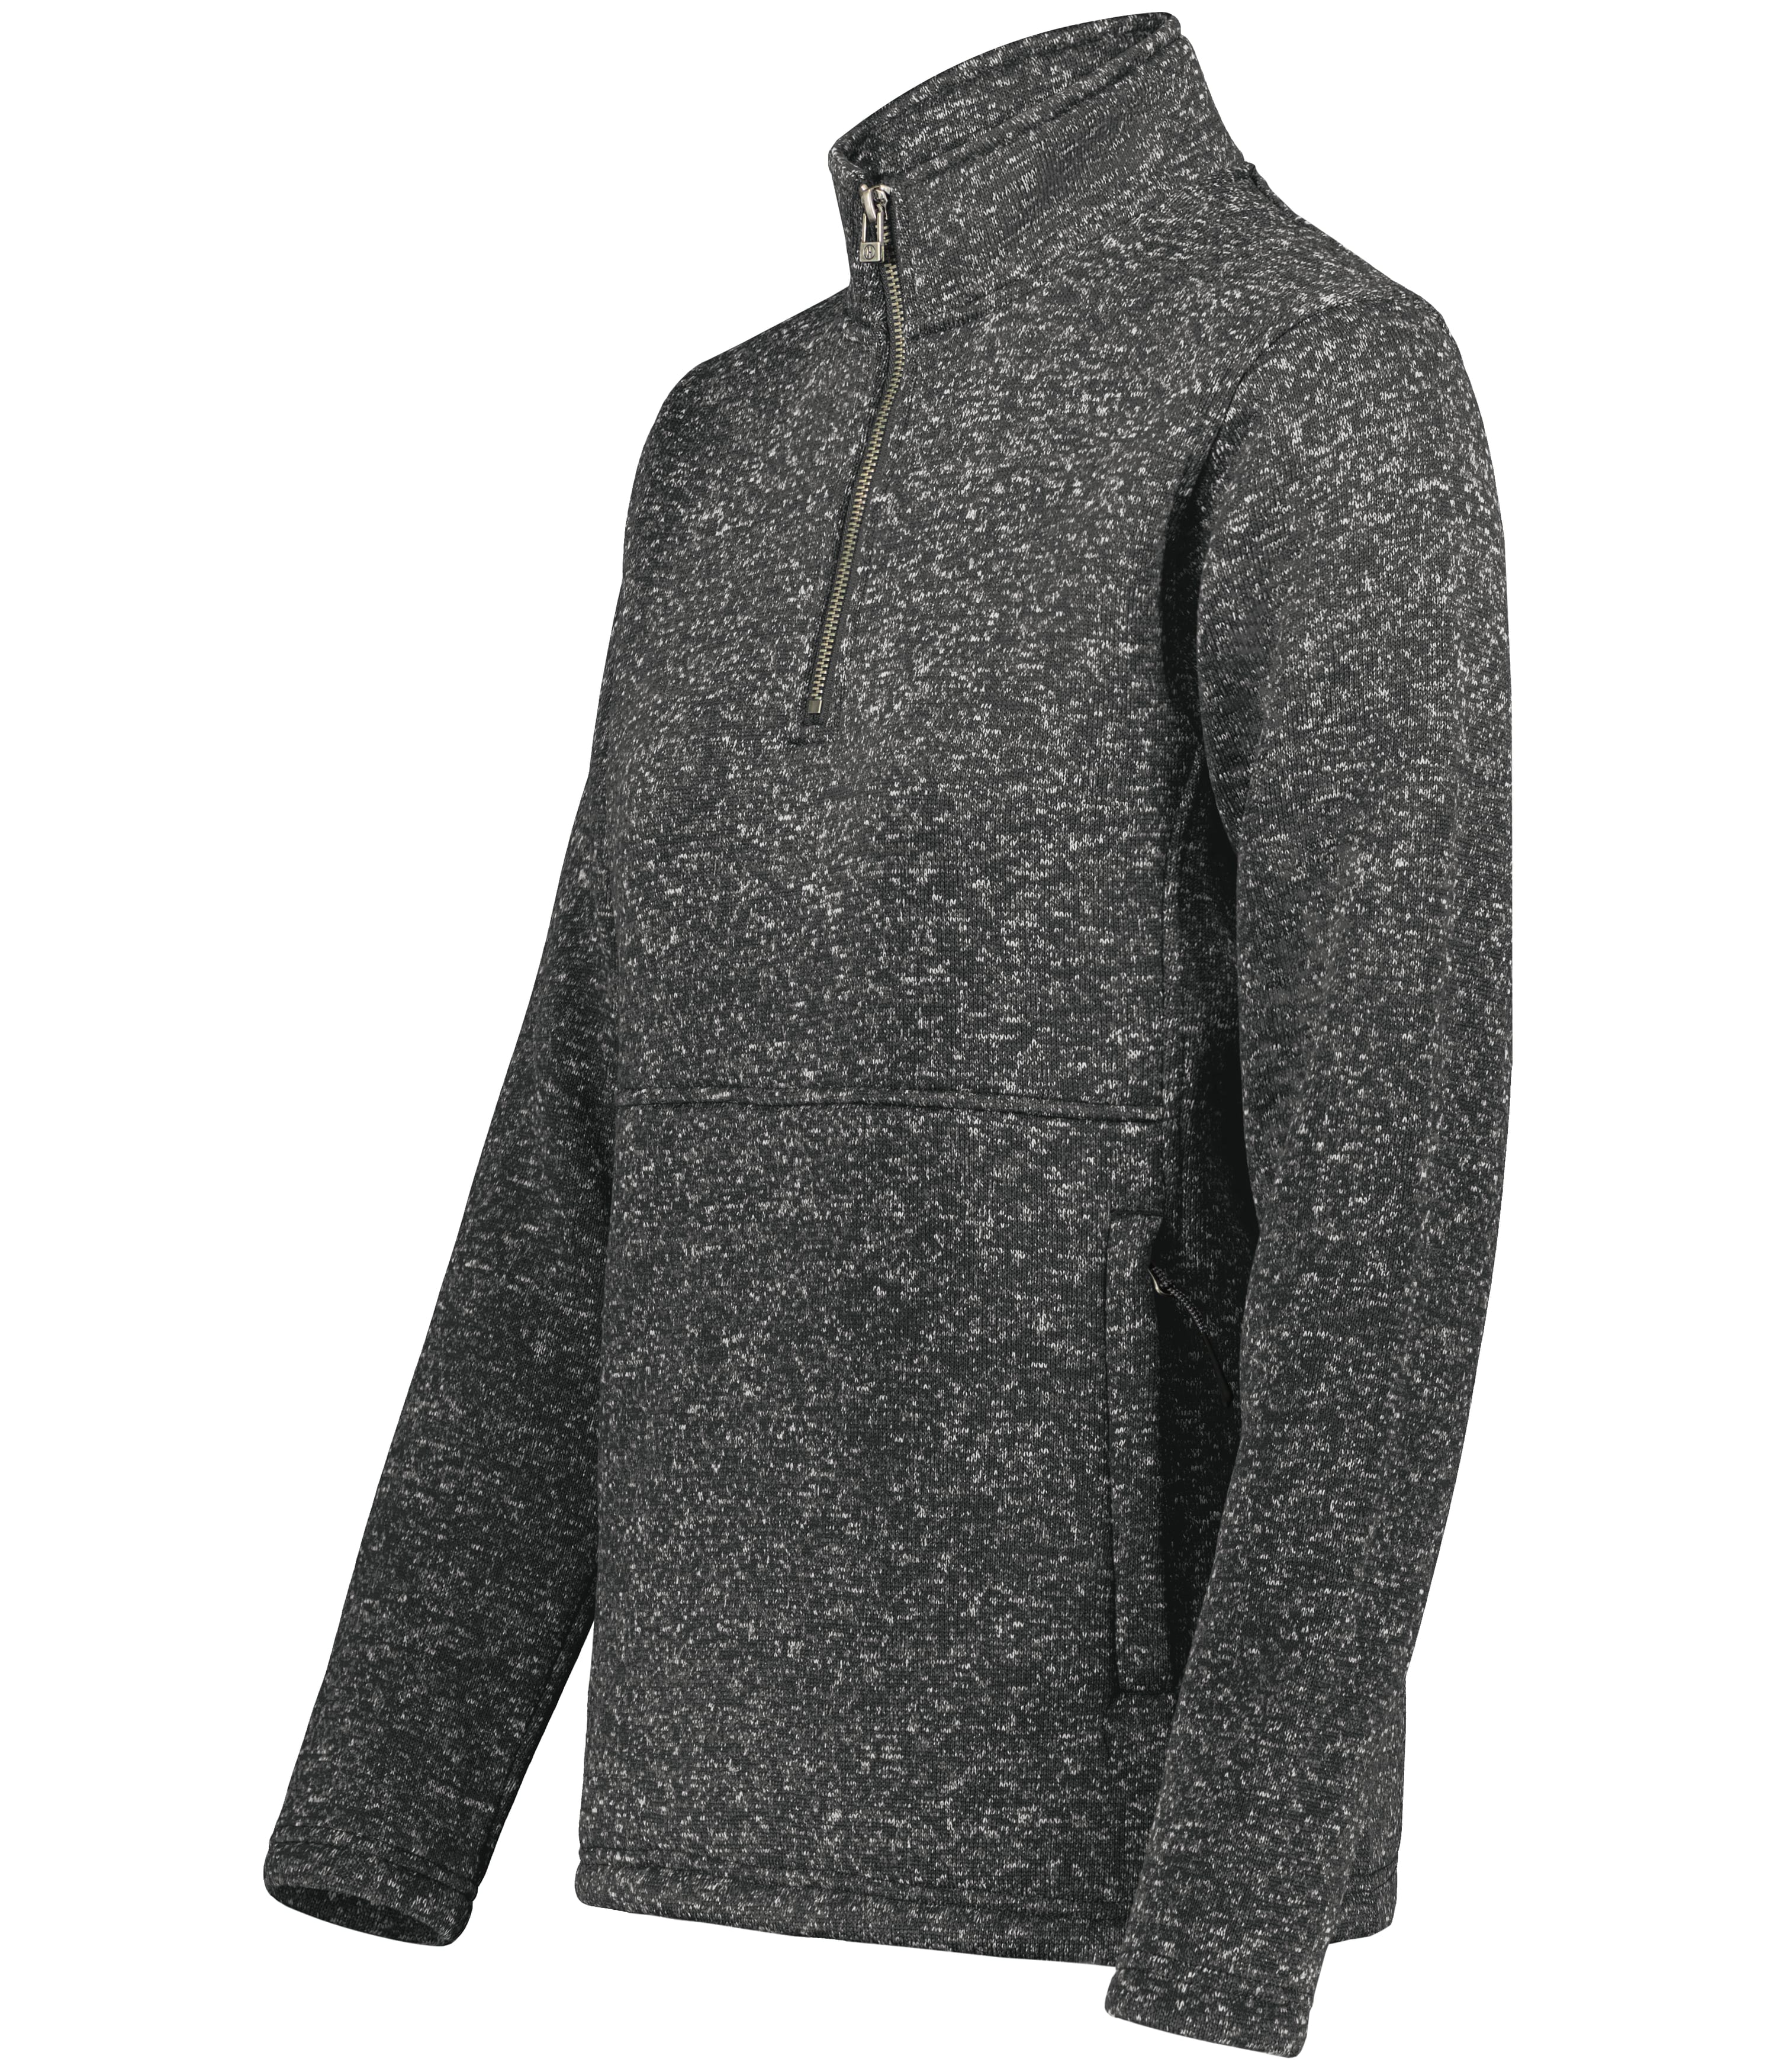 I4) 223740 Holloway Ladies Alpine Sweater Fleece 1/4 Zip Pullover - CONNECT WORK TOOLS